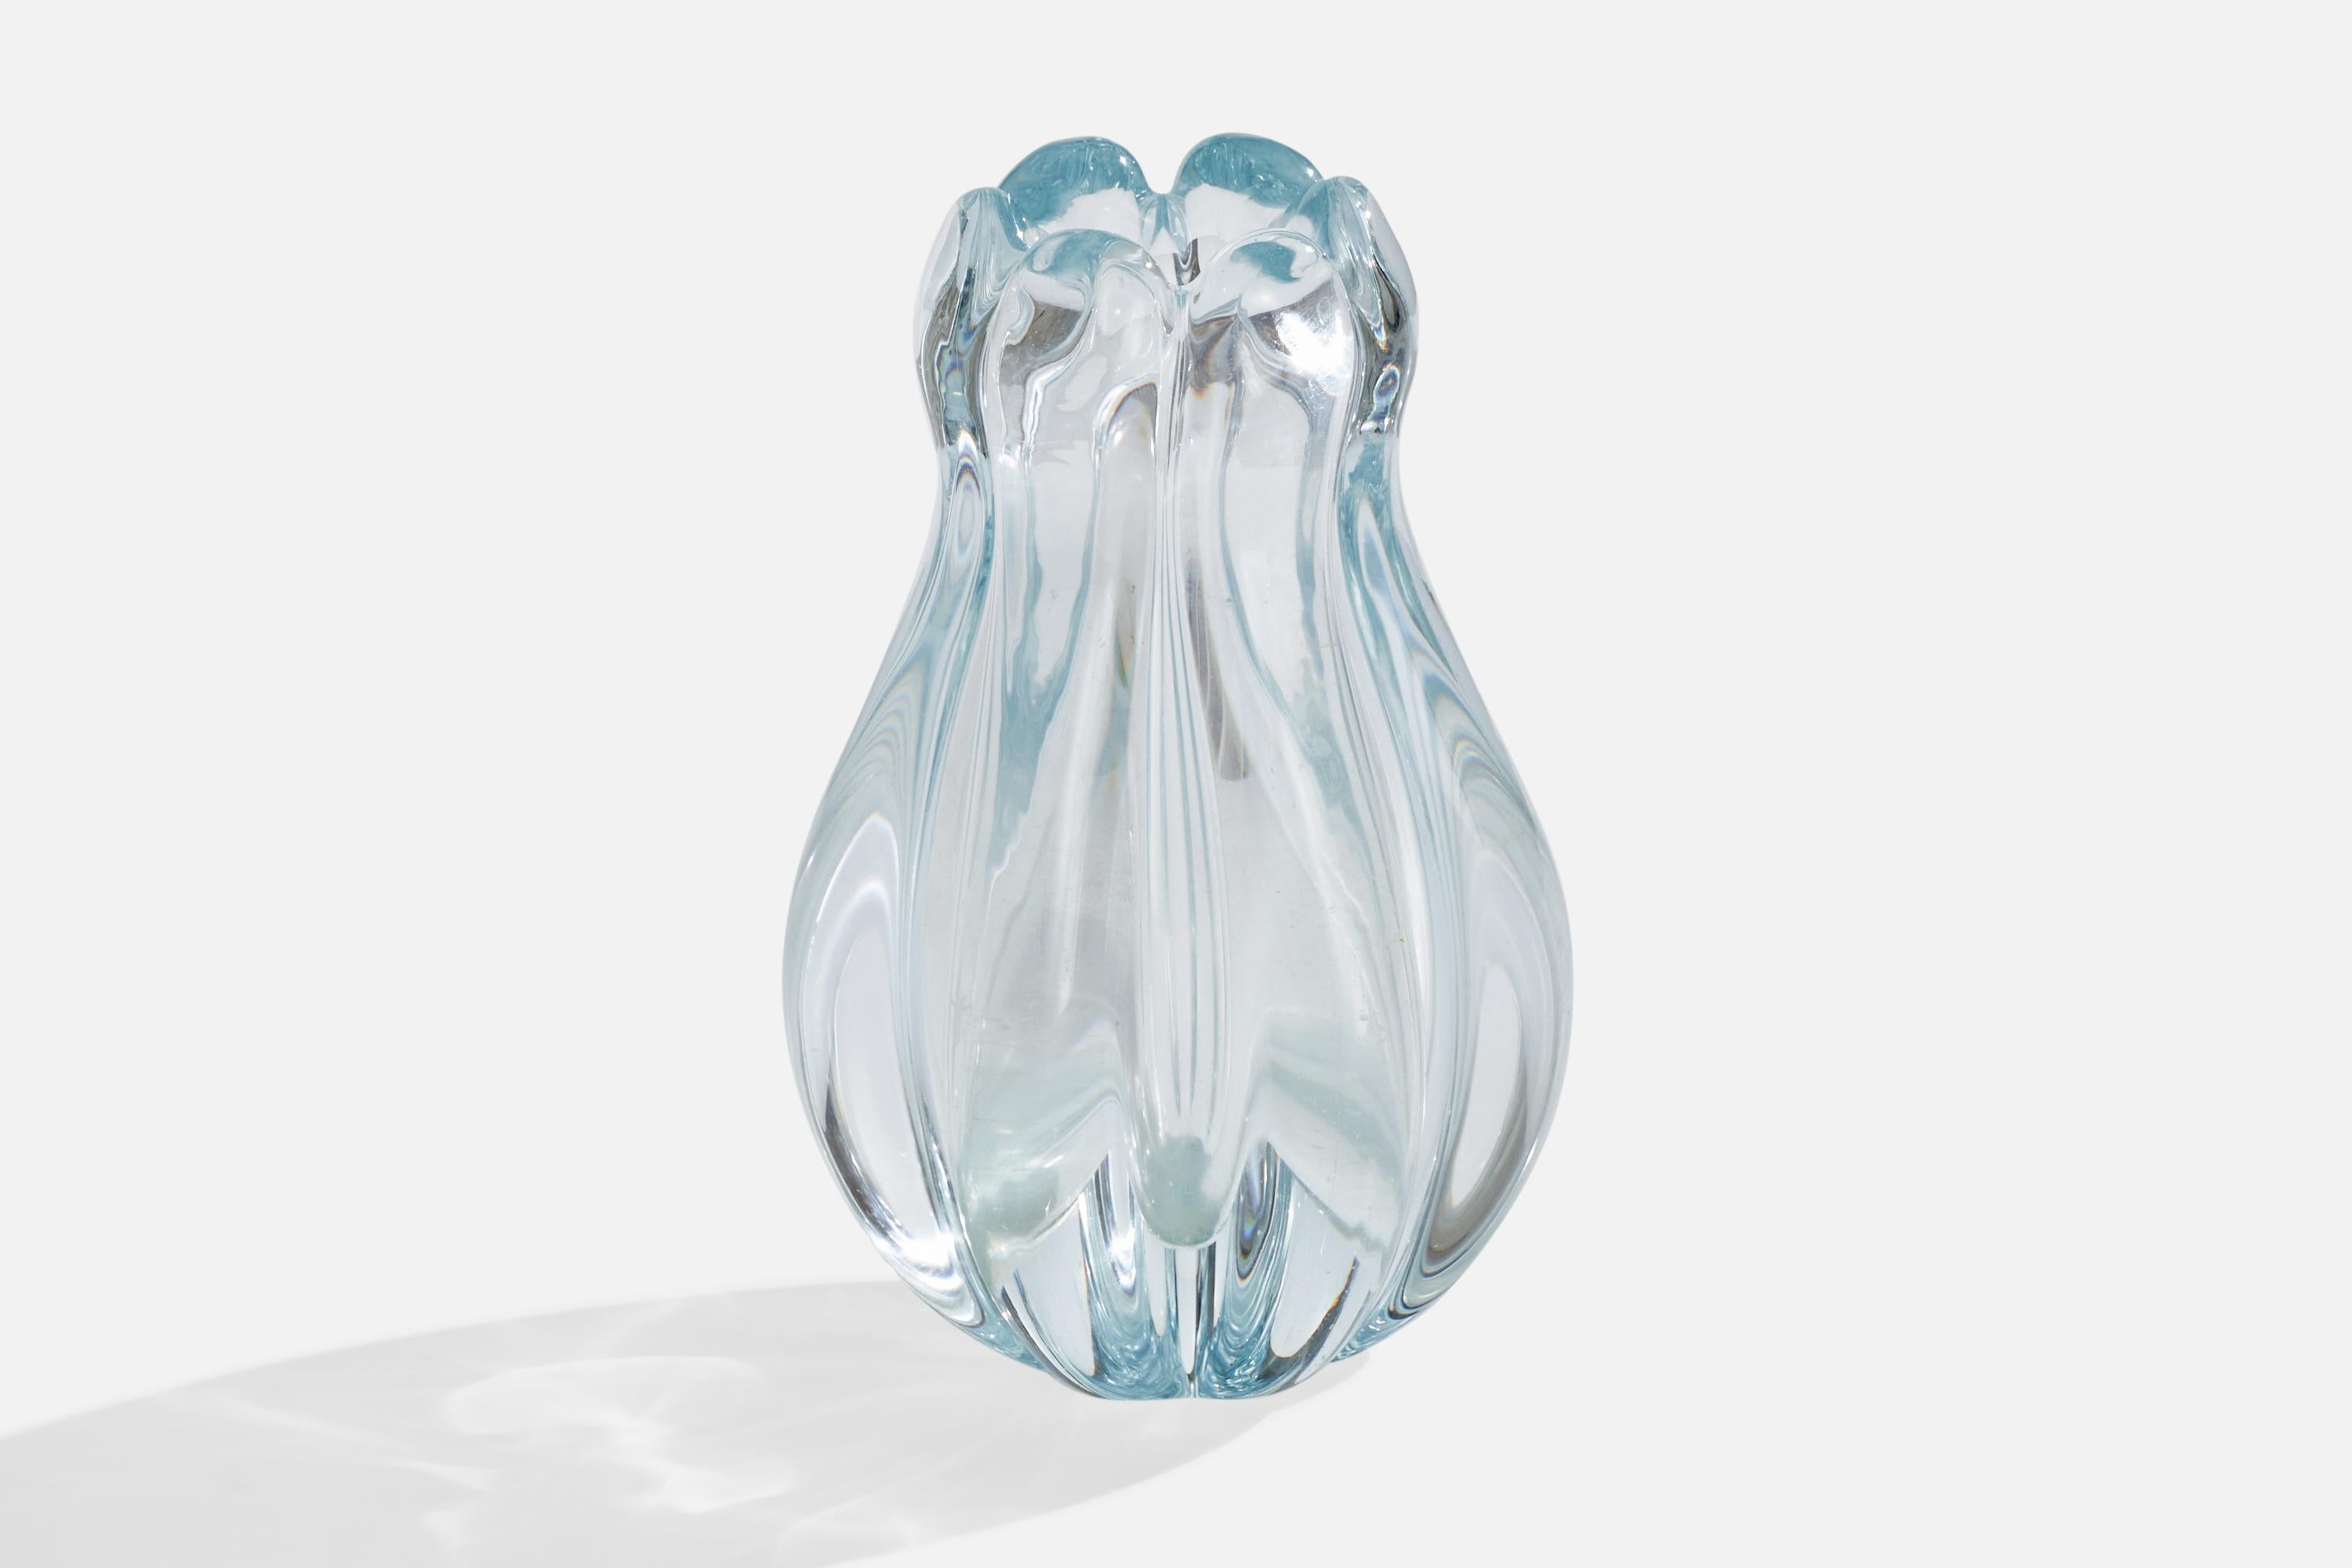 Organische Vase aus geblasenem Glas, Modell Stella Polaris, entworfen von Vicke Lindstrand und hergestellt von Orrefors, Schweden, um 1940.